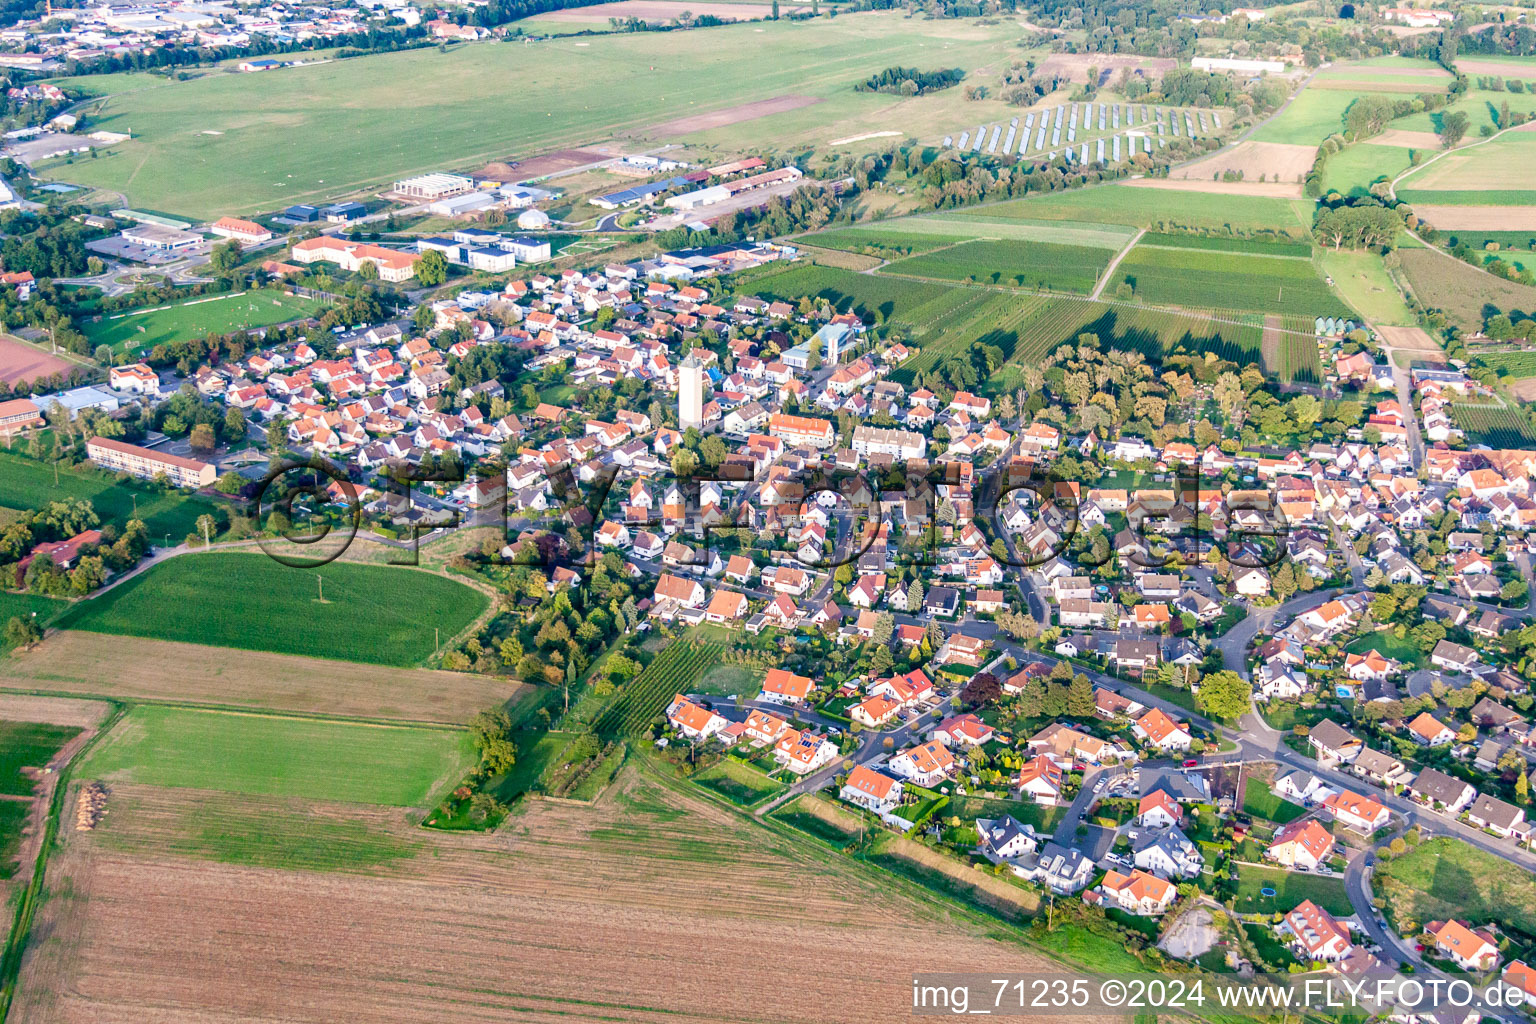 Ortsteil Lachen in Neustadt an der Weinstraße im Bundesland Rheinland-Pfalz, Deutschland von der Drohne aus gesehen